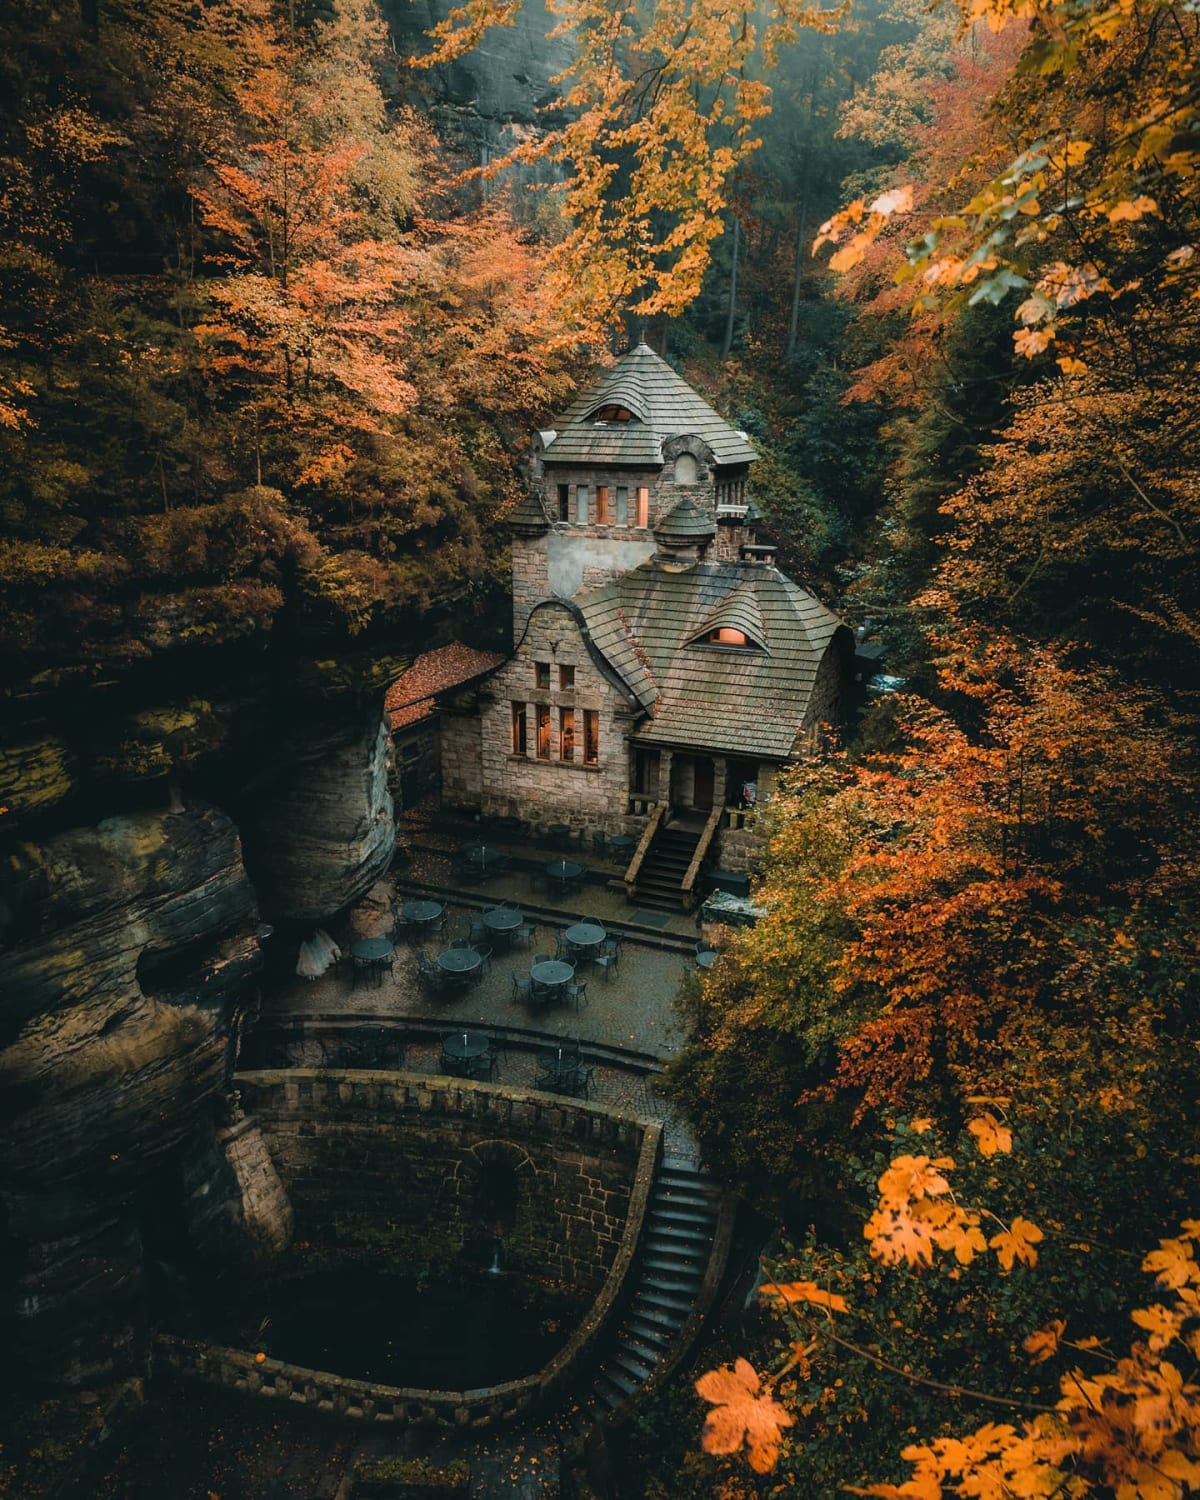 Tolkienesque scenery in the village of Hřensko, Ústí nad Labem Region, Czech Republic.